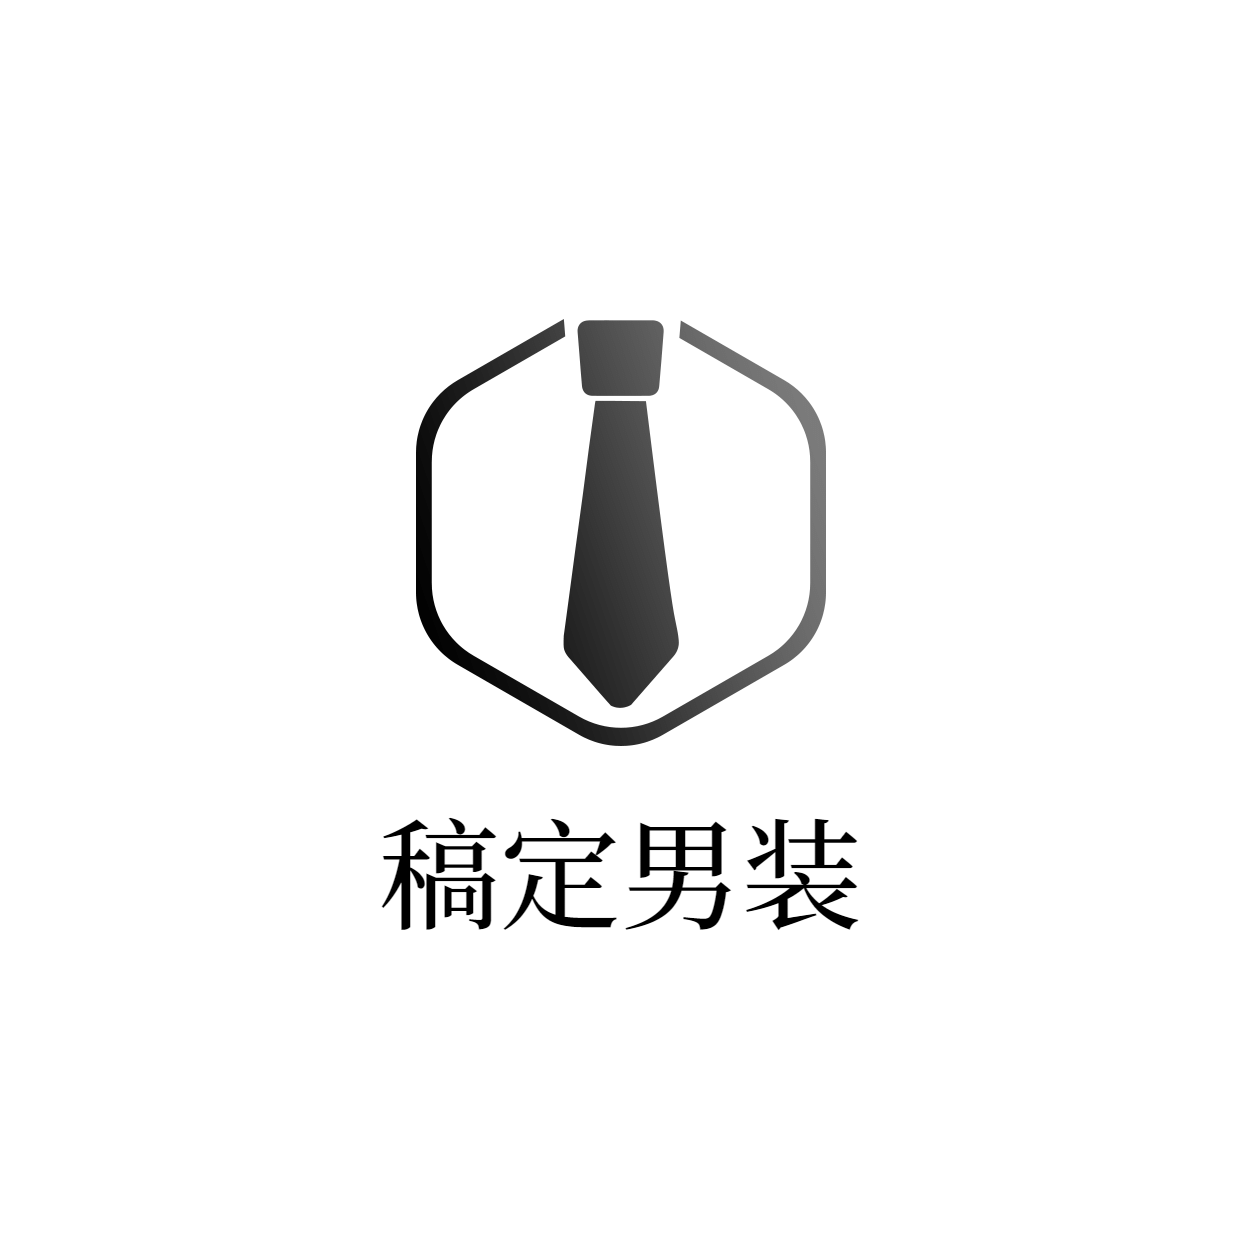 男士服装创意简约店标头像Logo